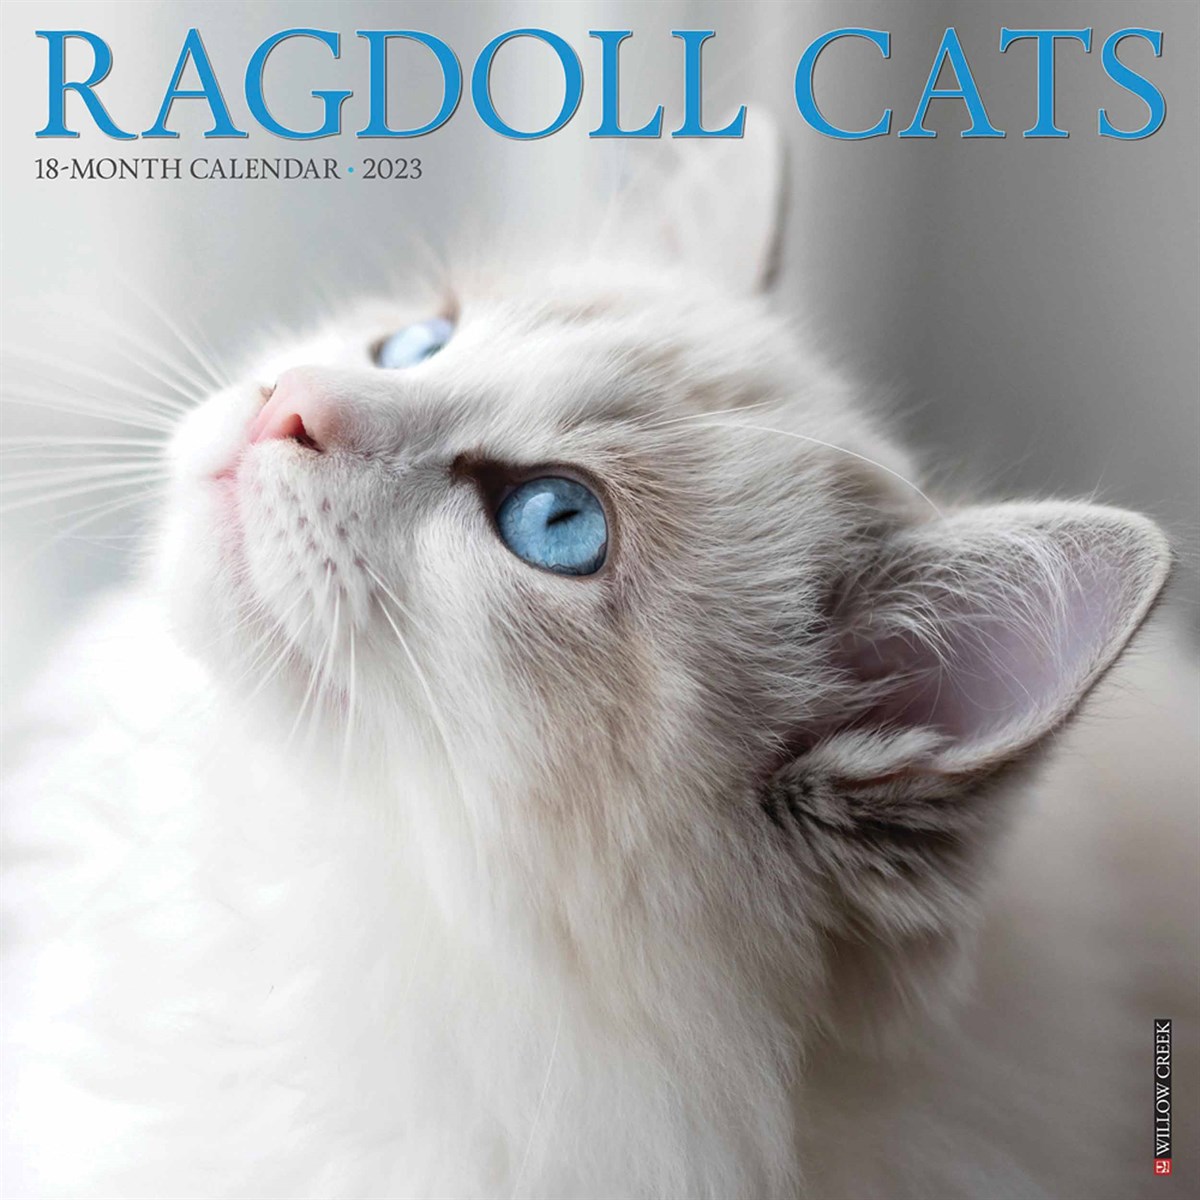 Ragdoll Cats 2023 Calendars